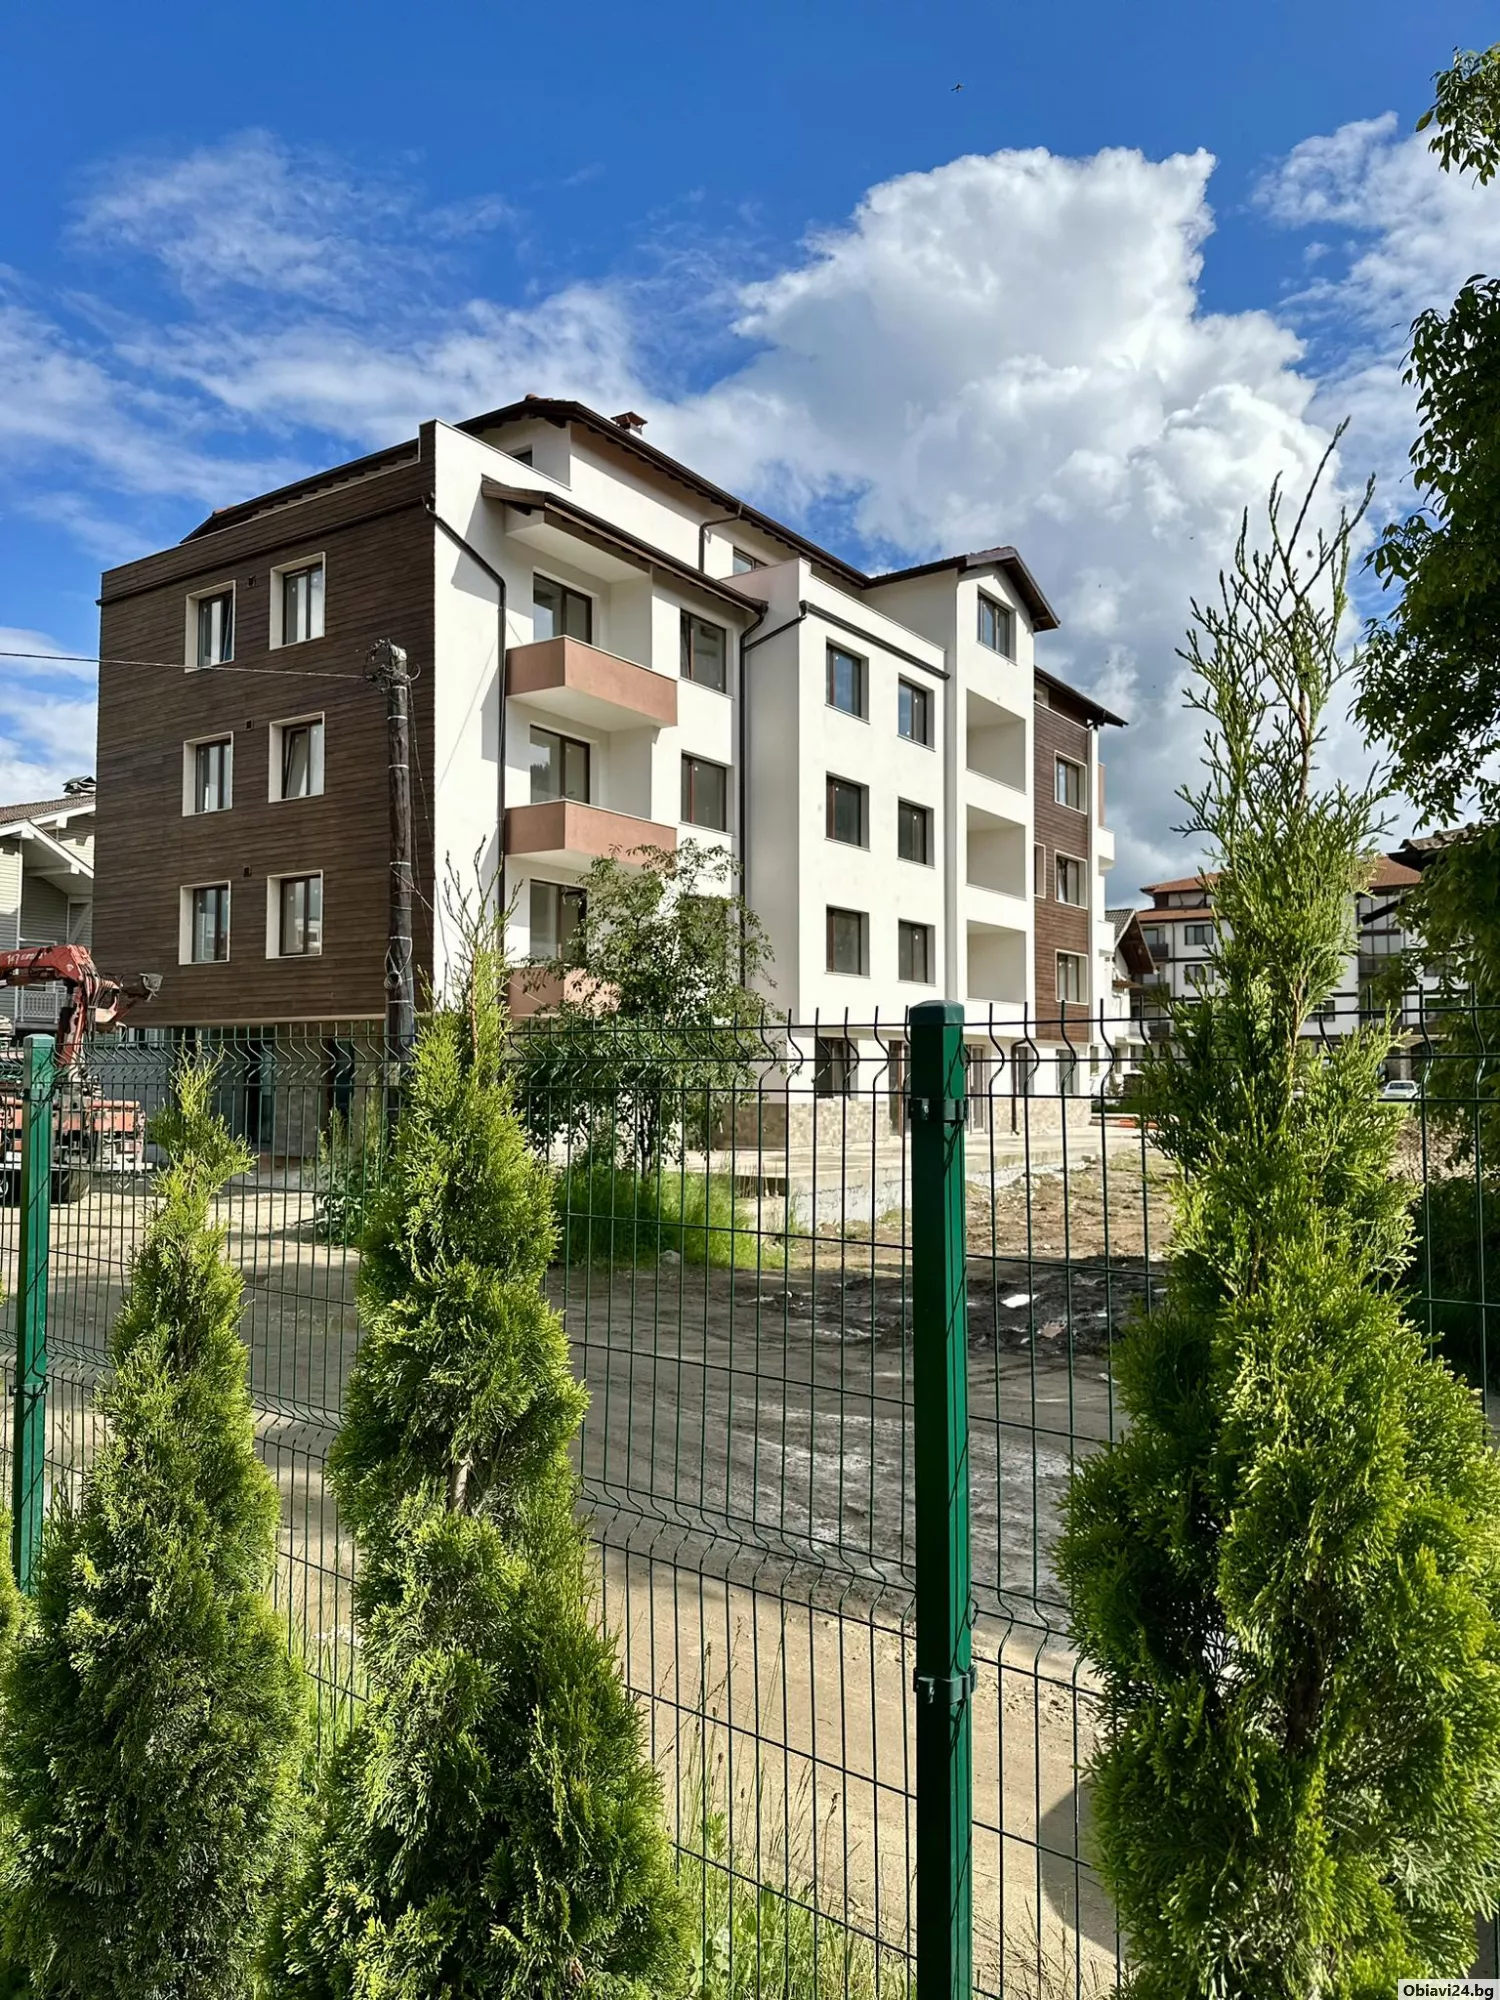 Магазини,апартаменти и къщи Велинград - obiavi24.bg